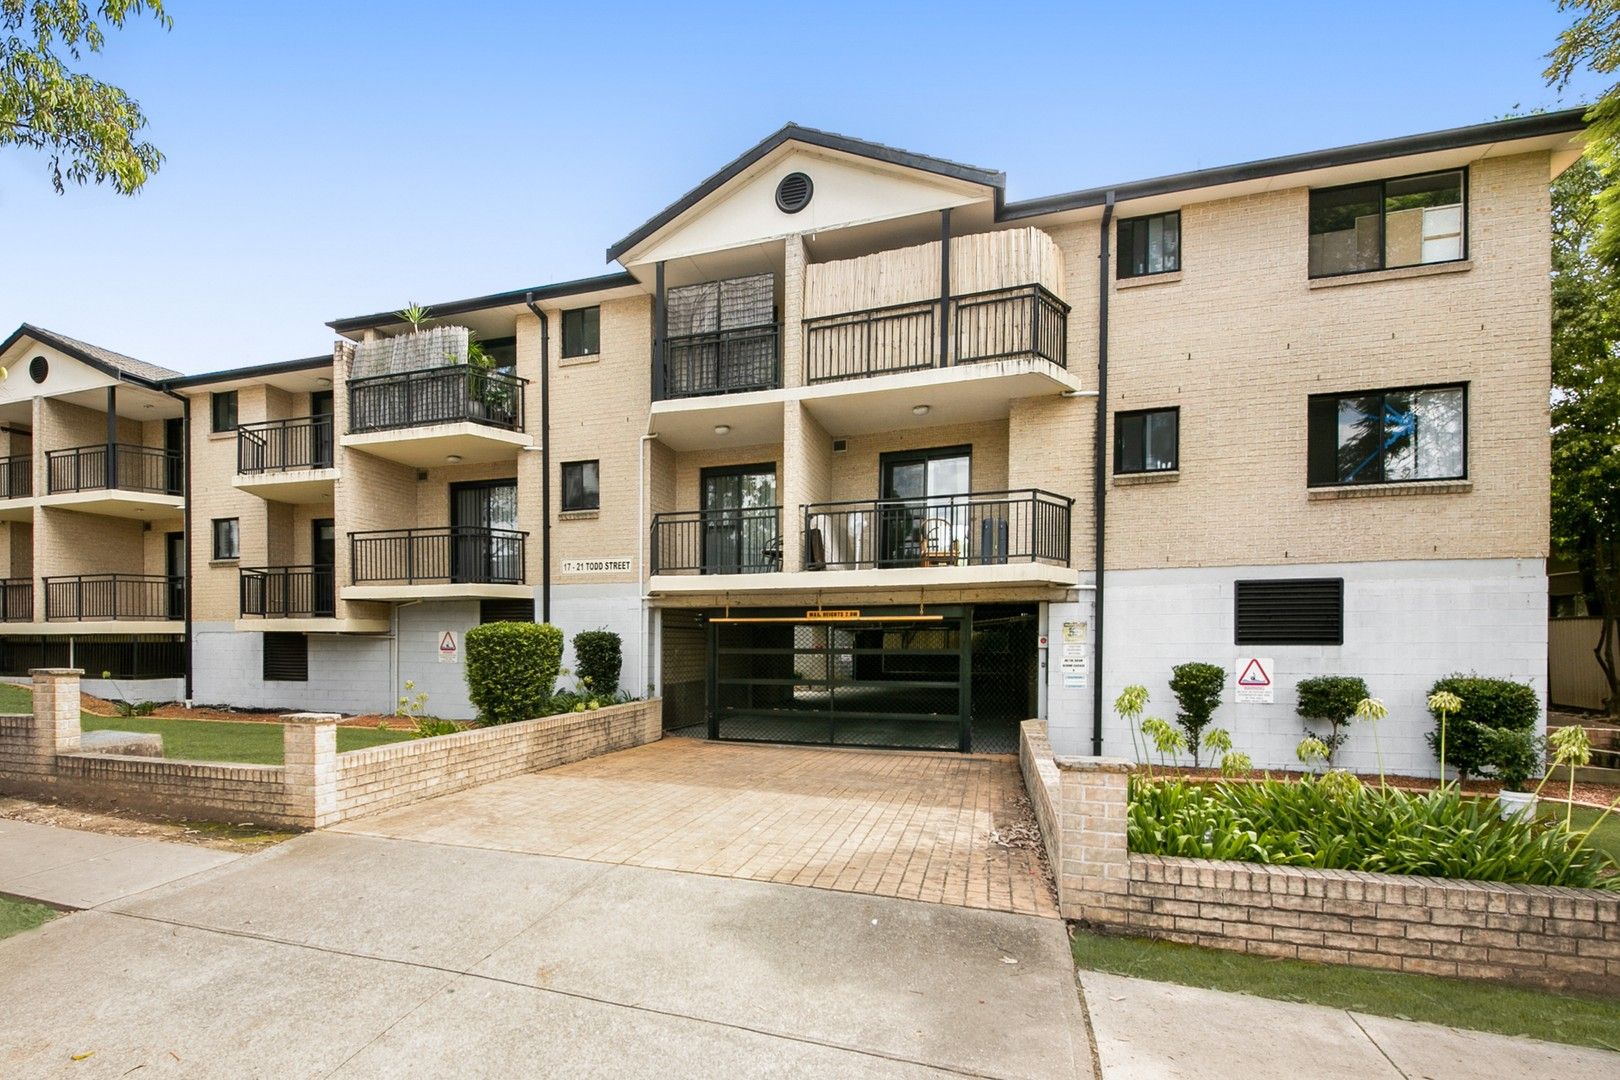 2 bedrooms Apartment / Unit / Flat in 16/17 Todd Street MERRYLANDS NSW, 2160